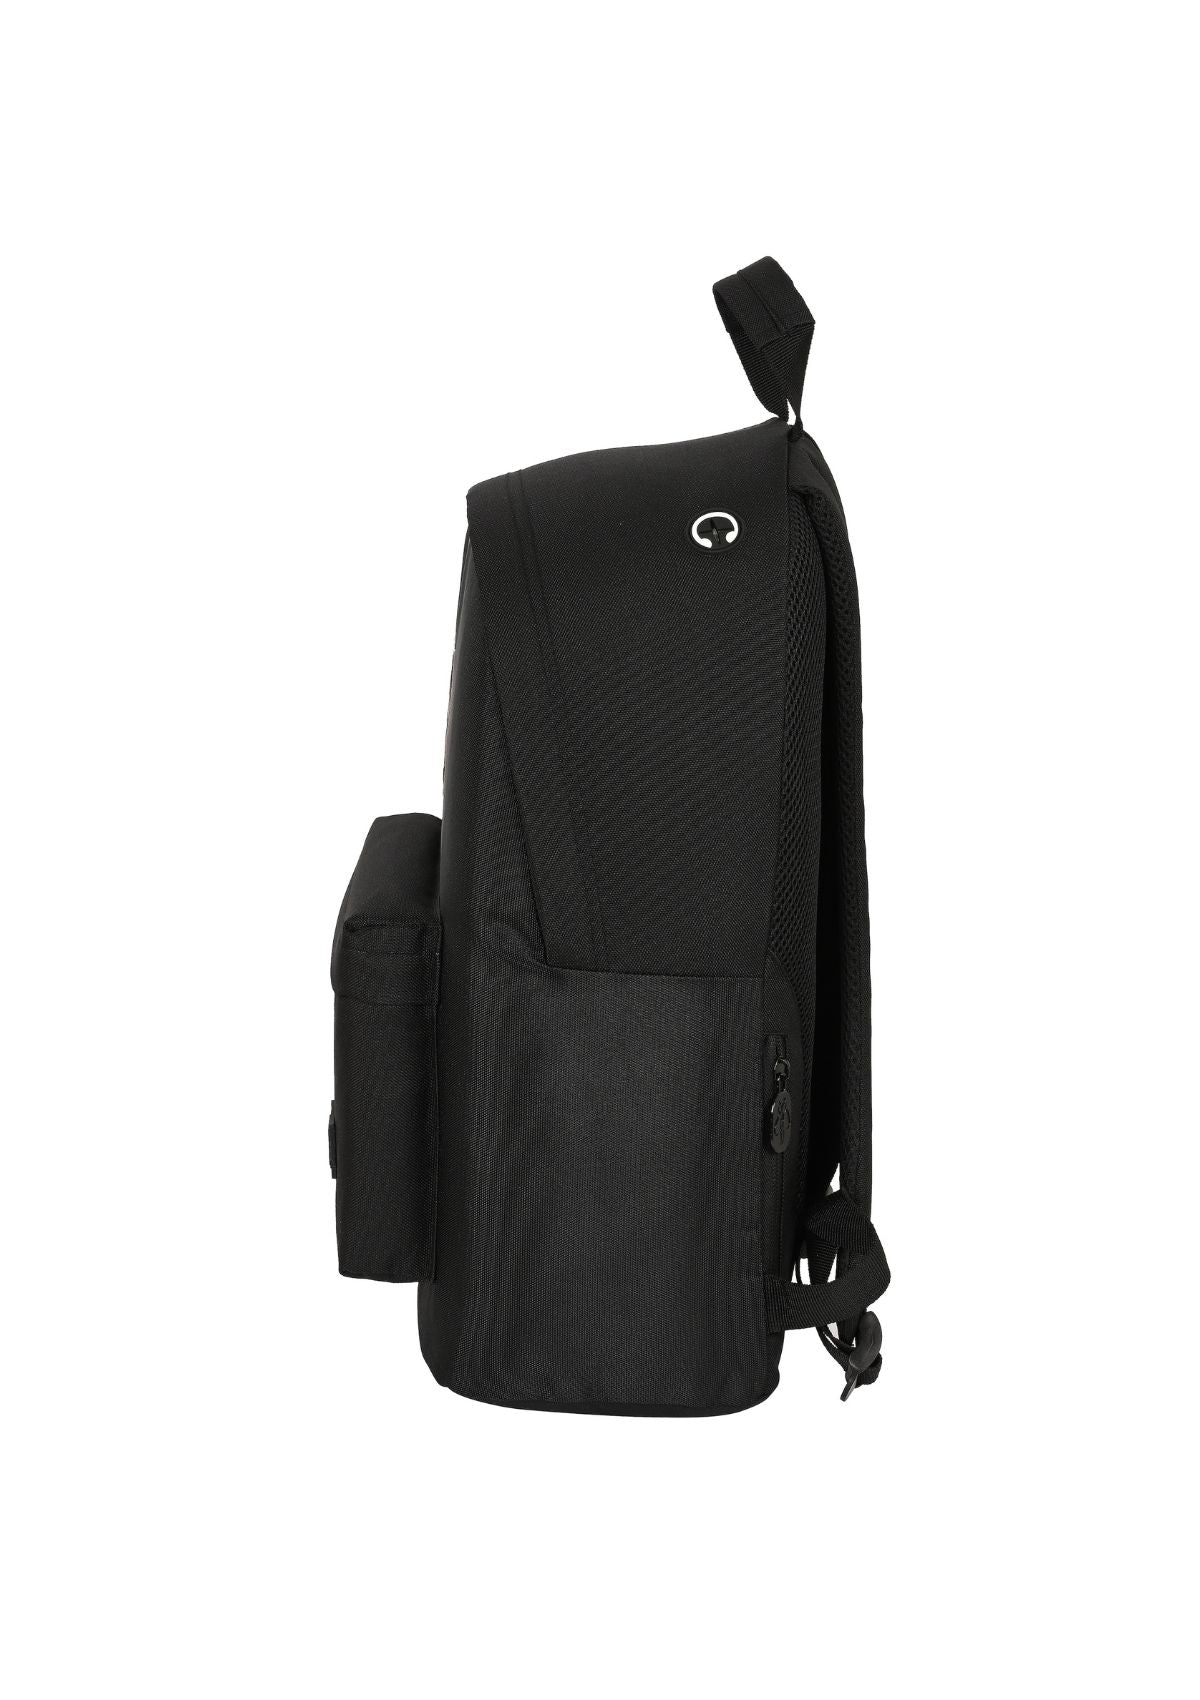 Mandalorian Large Backpack side